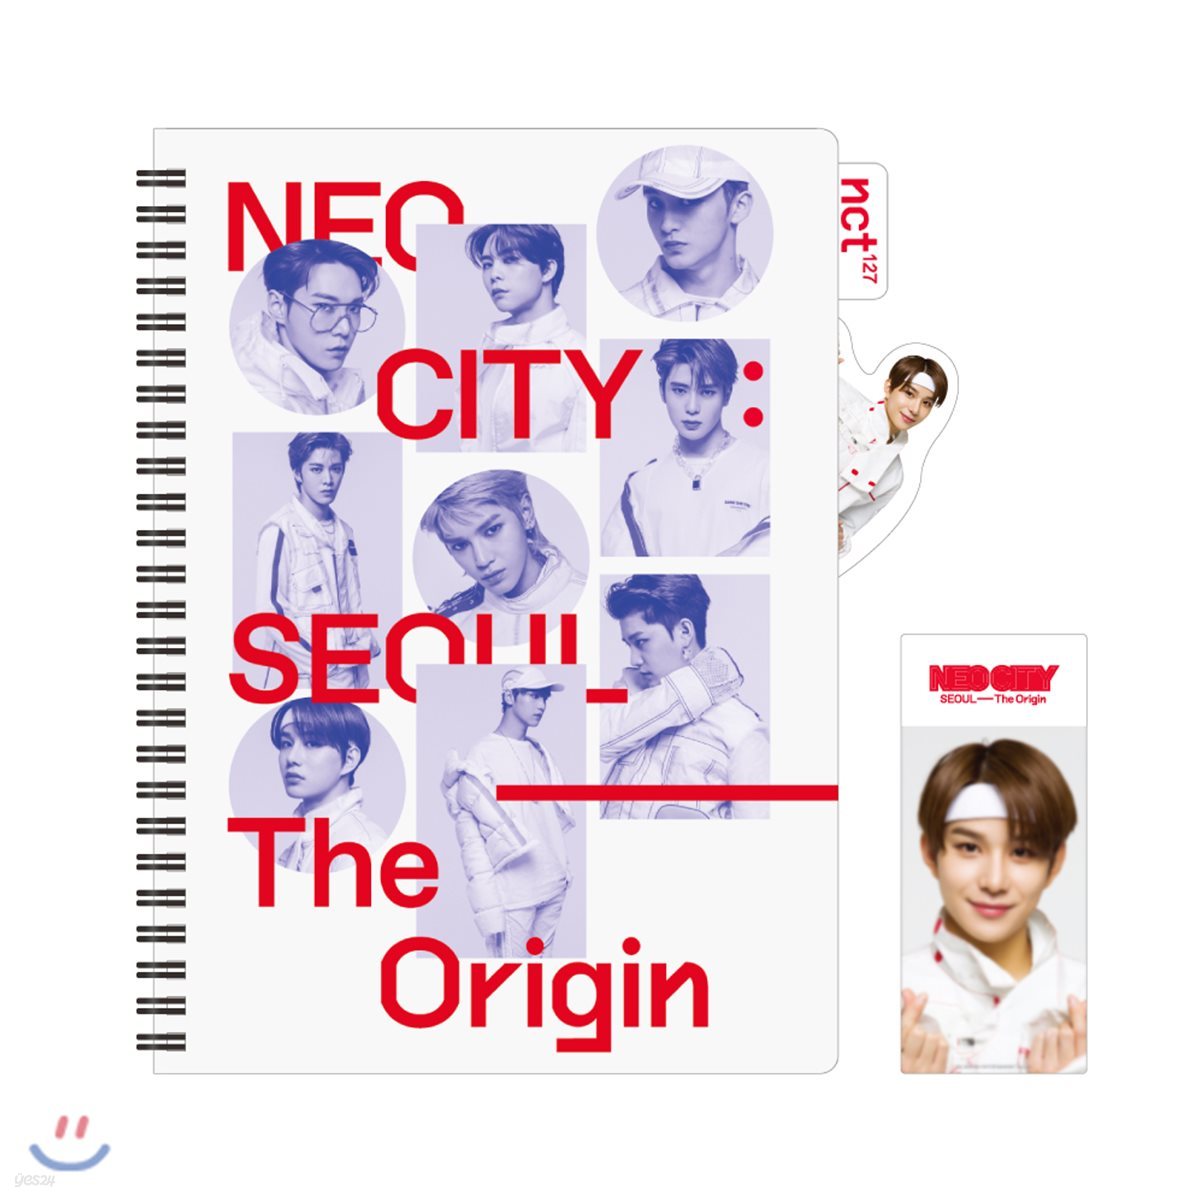 NCT 127 [NEO CITY : SEOUL - The Origin]- 인덱스노트+북마크 [정우]